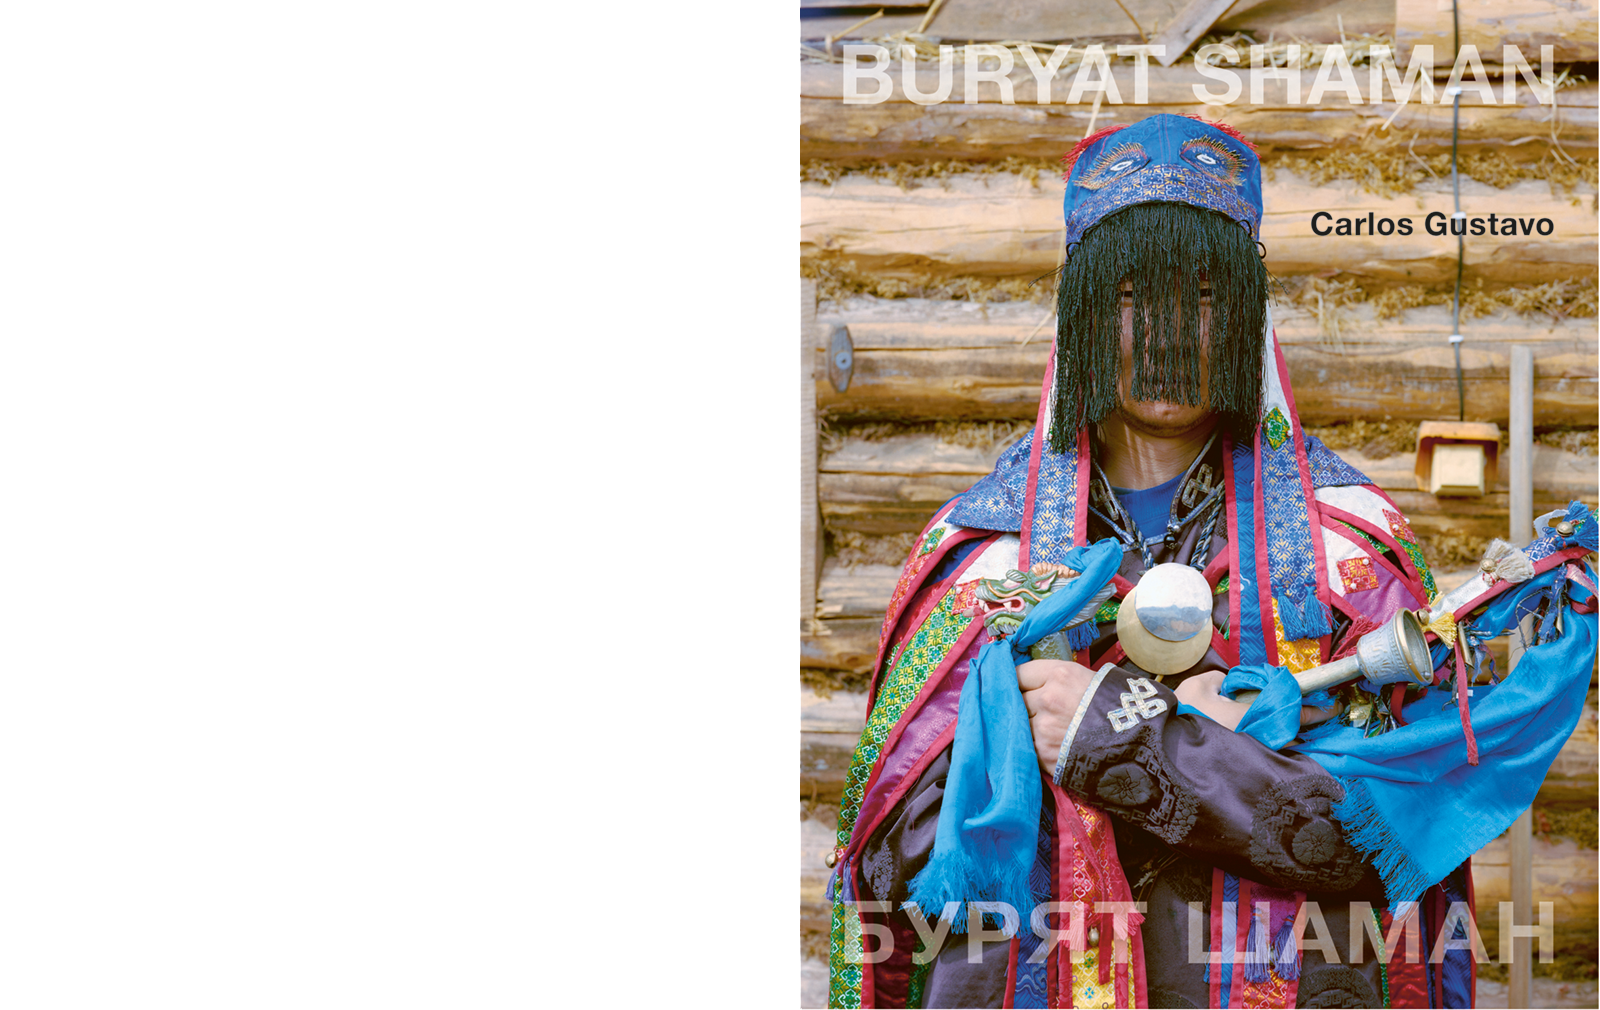 CARLOS GUSTAVO - Buryat shaman